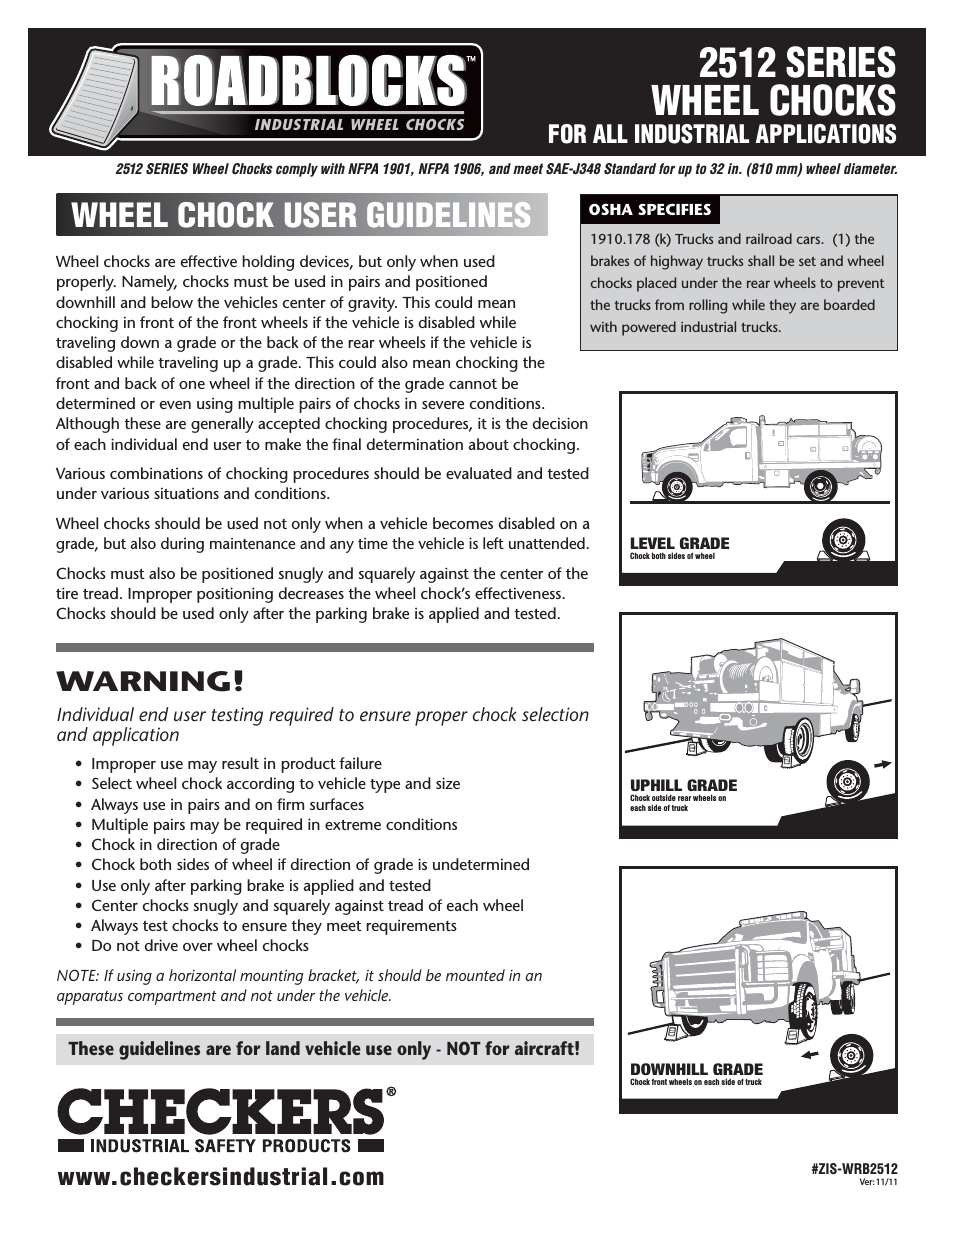 Roadblocks 2512 Wheel Chocks User Guidelines